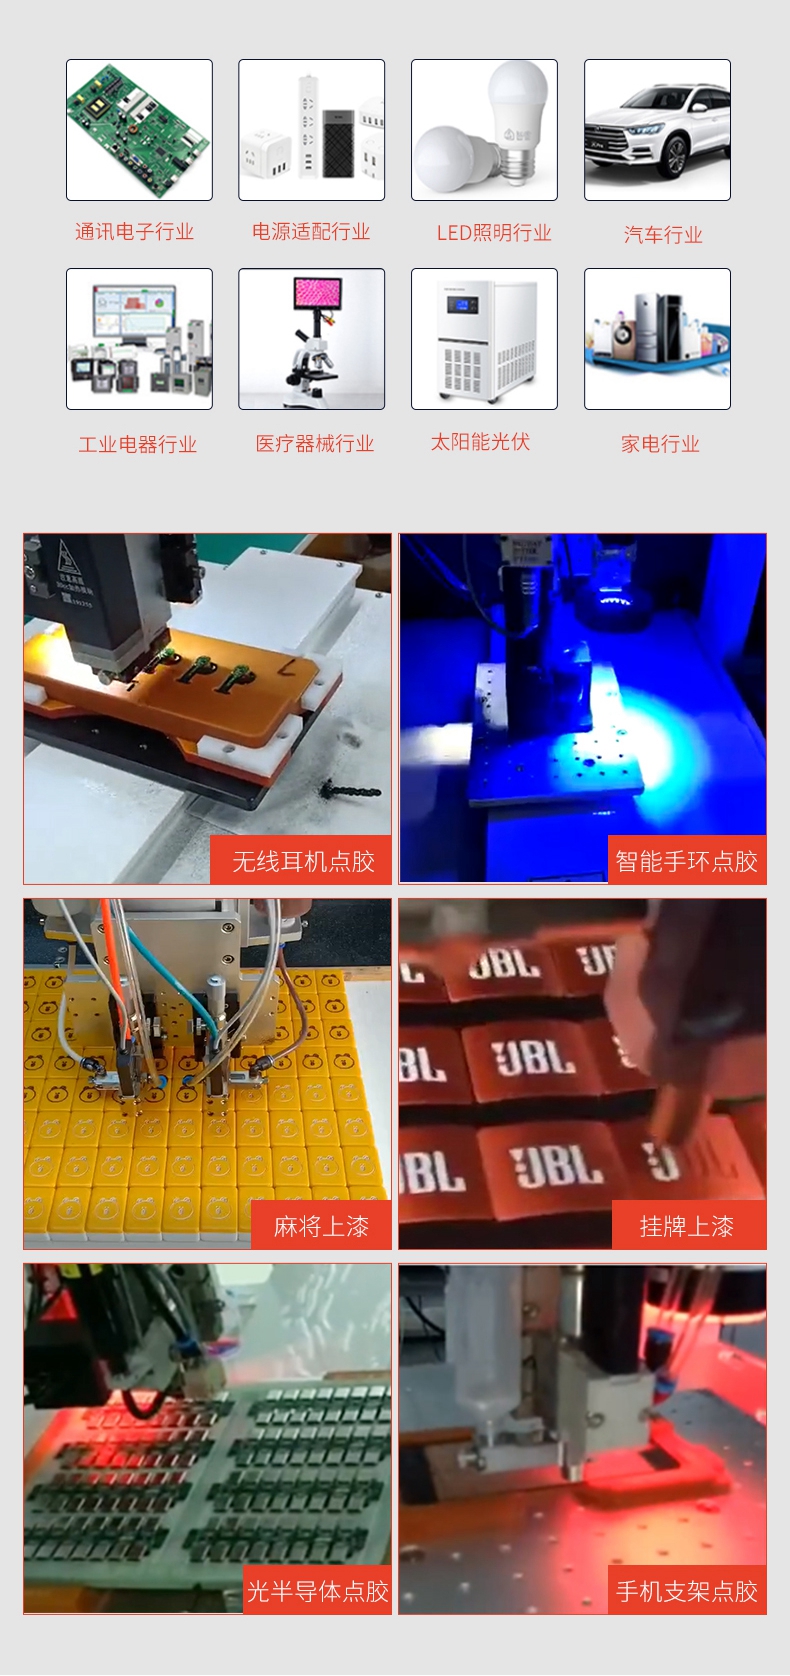 桌面式视觉喷射点胶机-深圳讯博科技-螺丝机-等离子处理机-灌胶机-点胶机-焊锡机